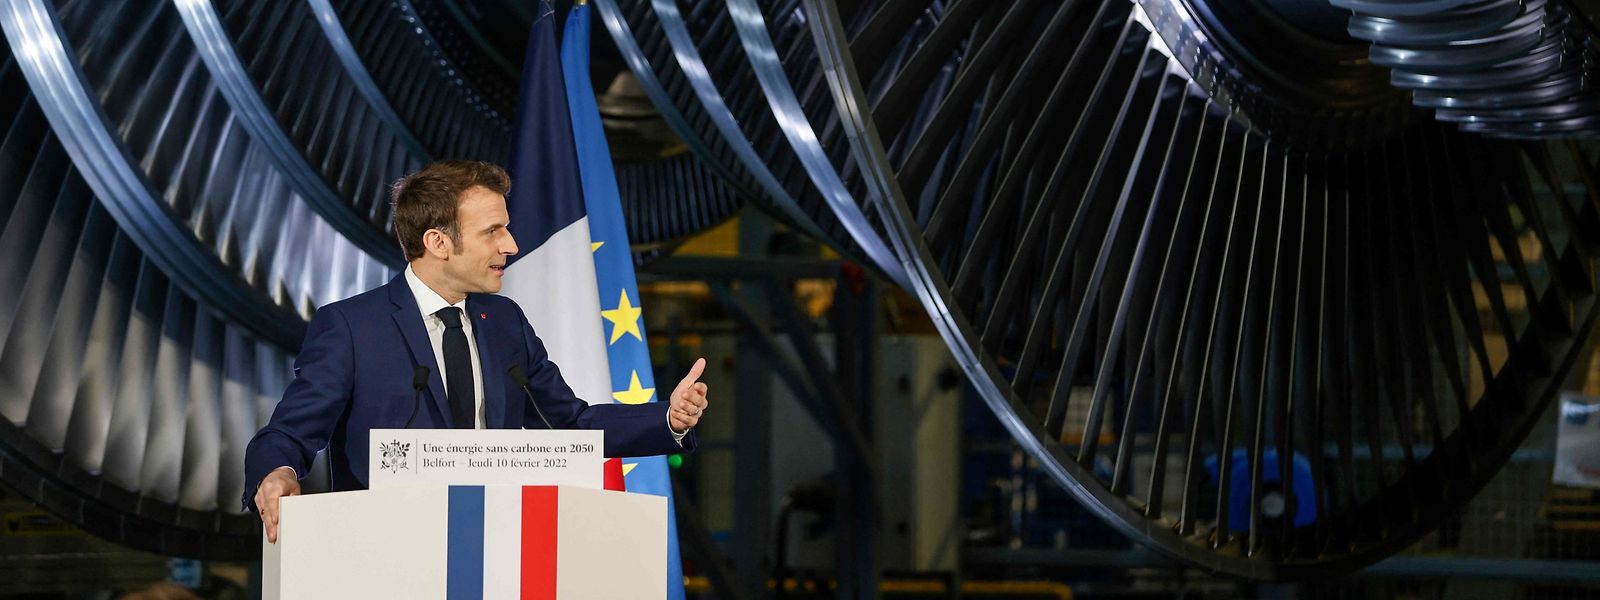 Symbolisch: Macron am Rednerpult vor einer Dampfturbine in Belfort.